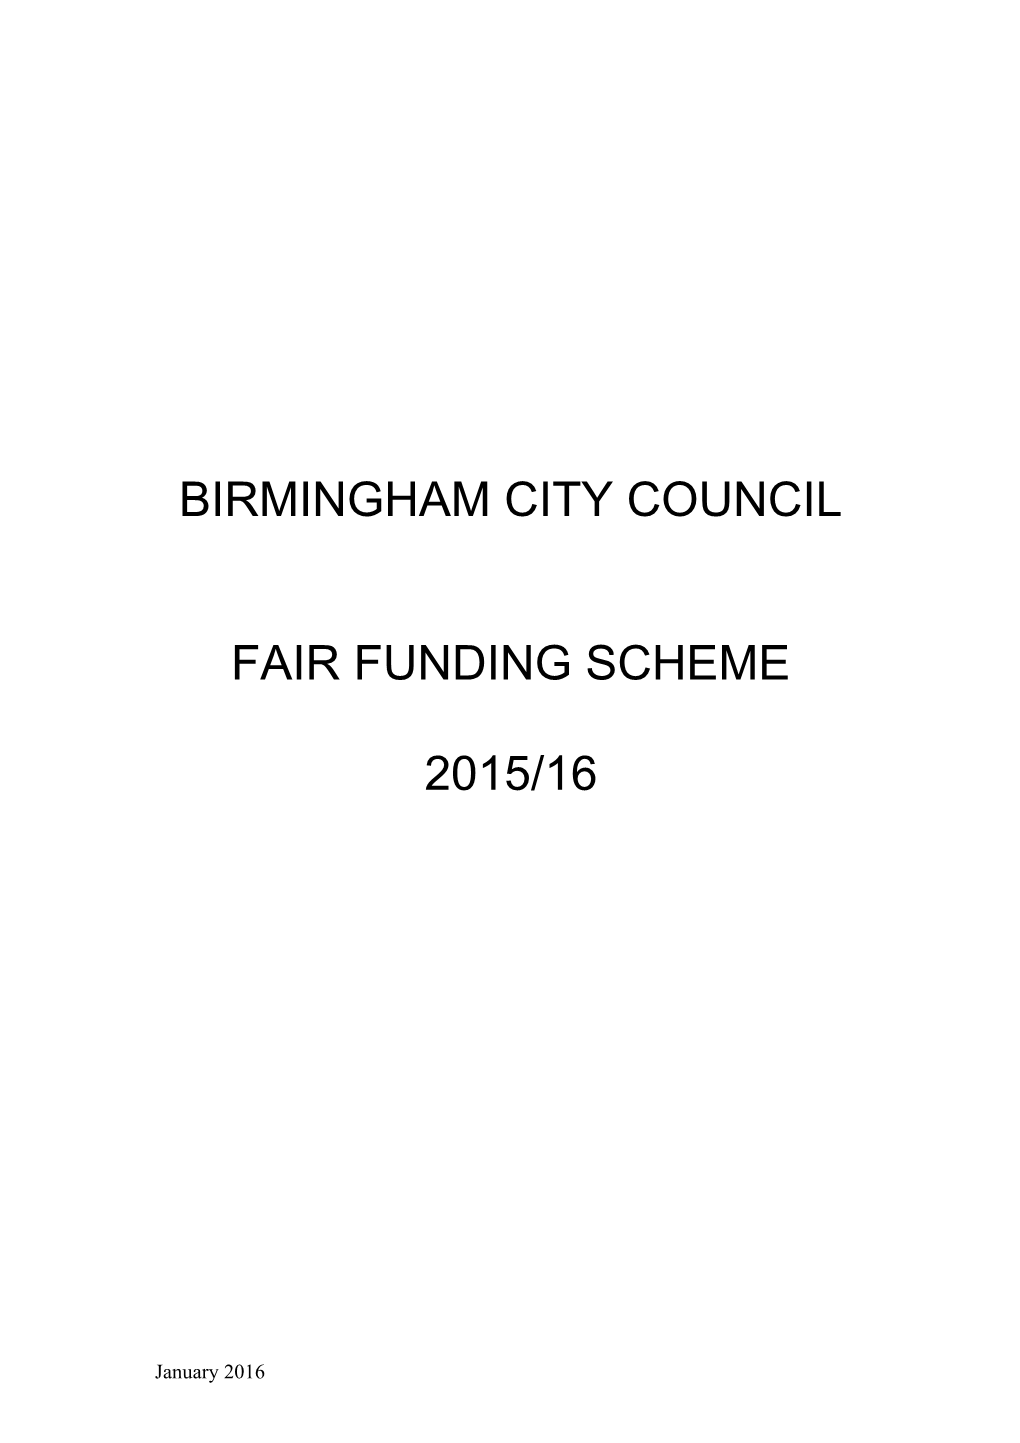 Birmingham City Council s2